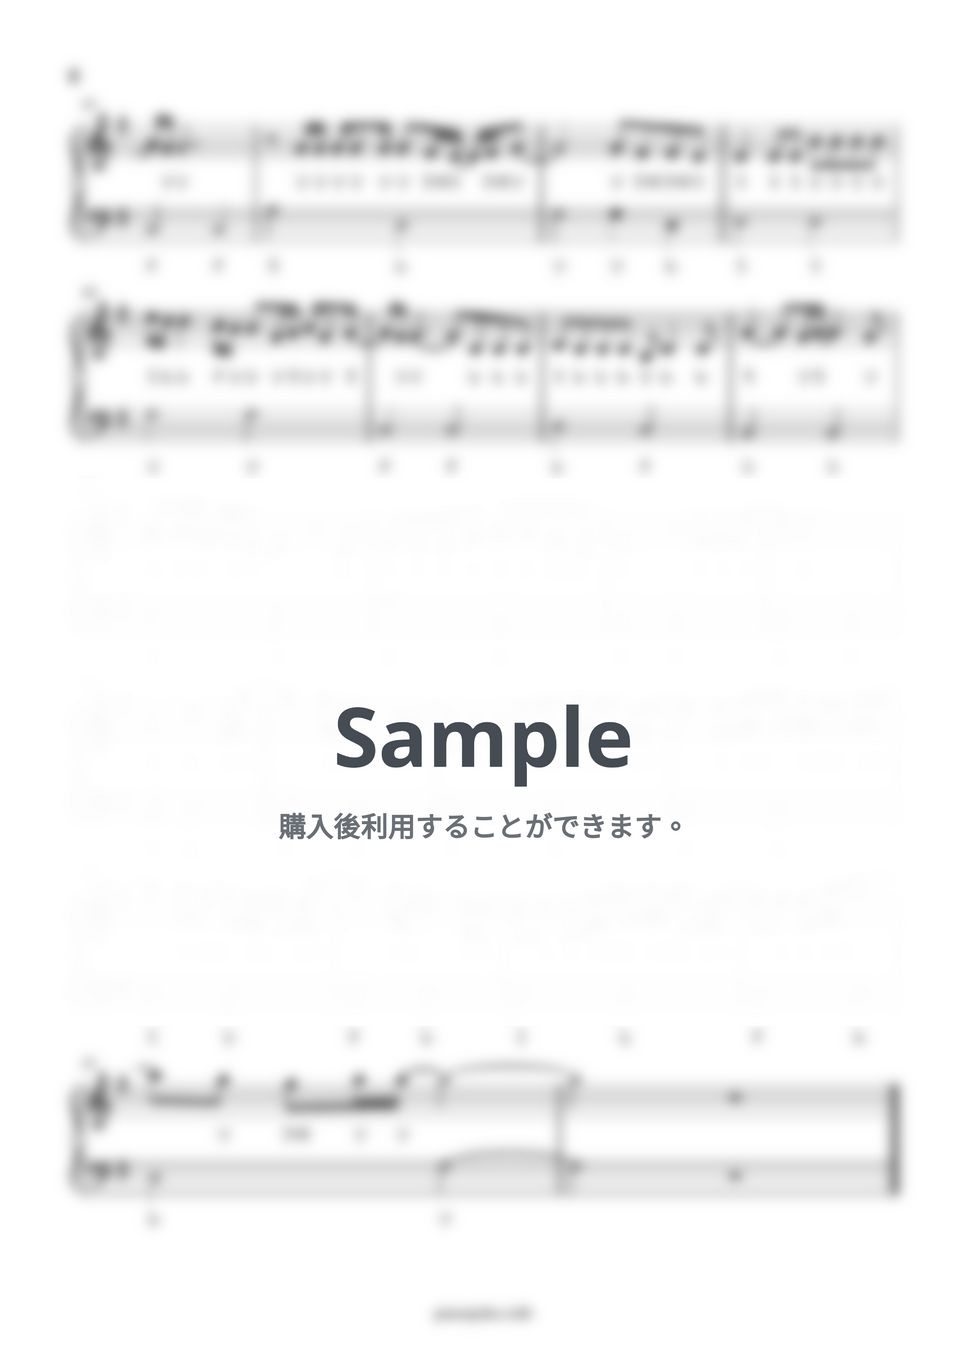 レミオロメン - 粉雪 (ドレミ付き/簡単楽譜) by ピアノ塾